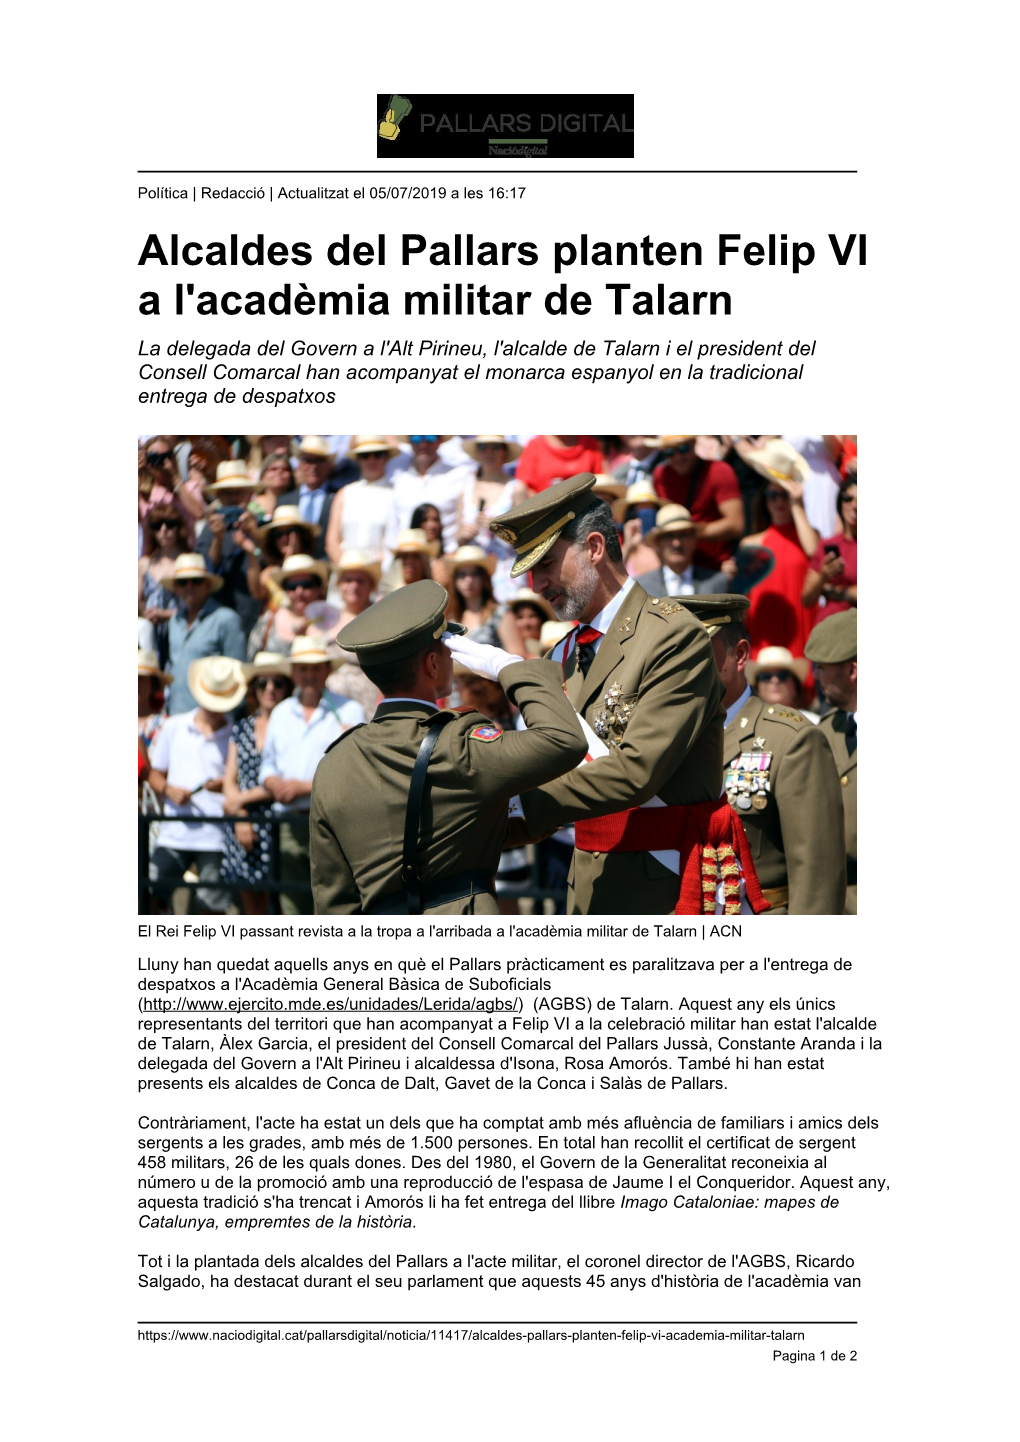 Alcaldes Del Pallars Planten Felip VI a L'acadèmia Militar De Talarn